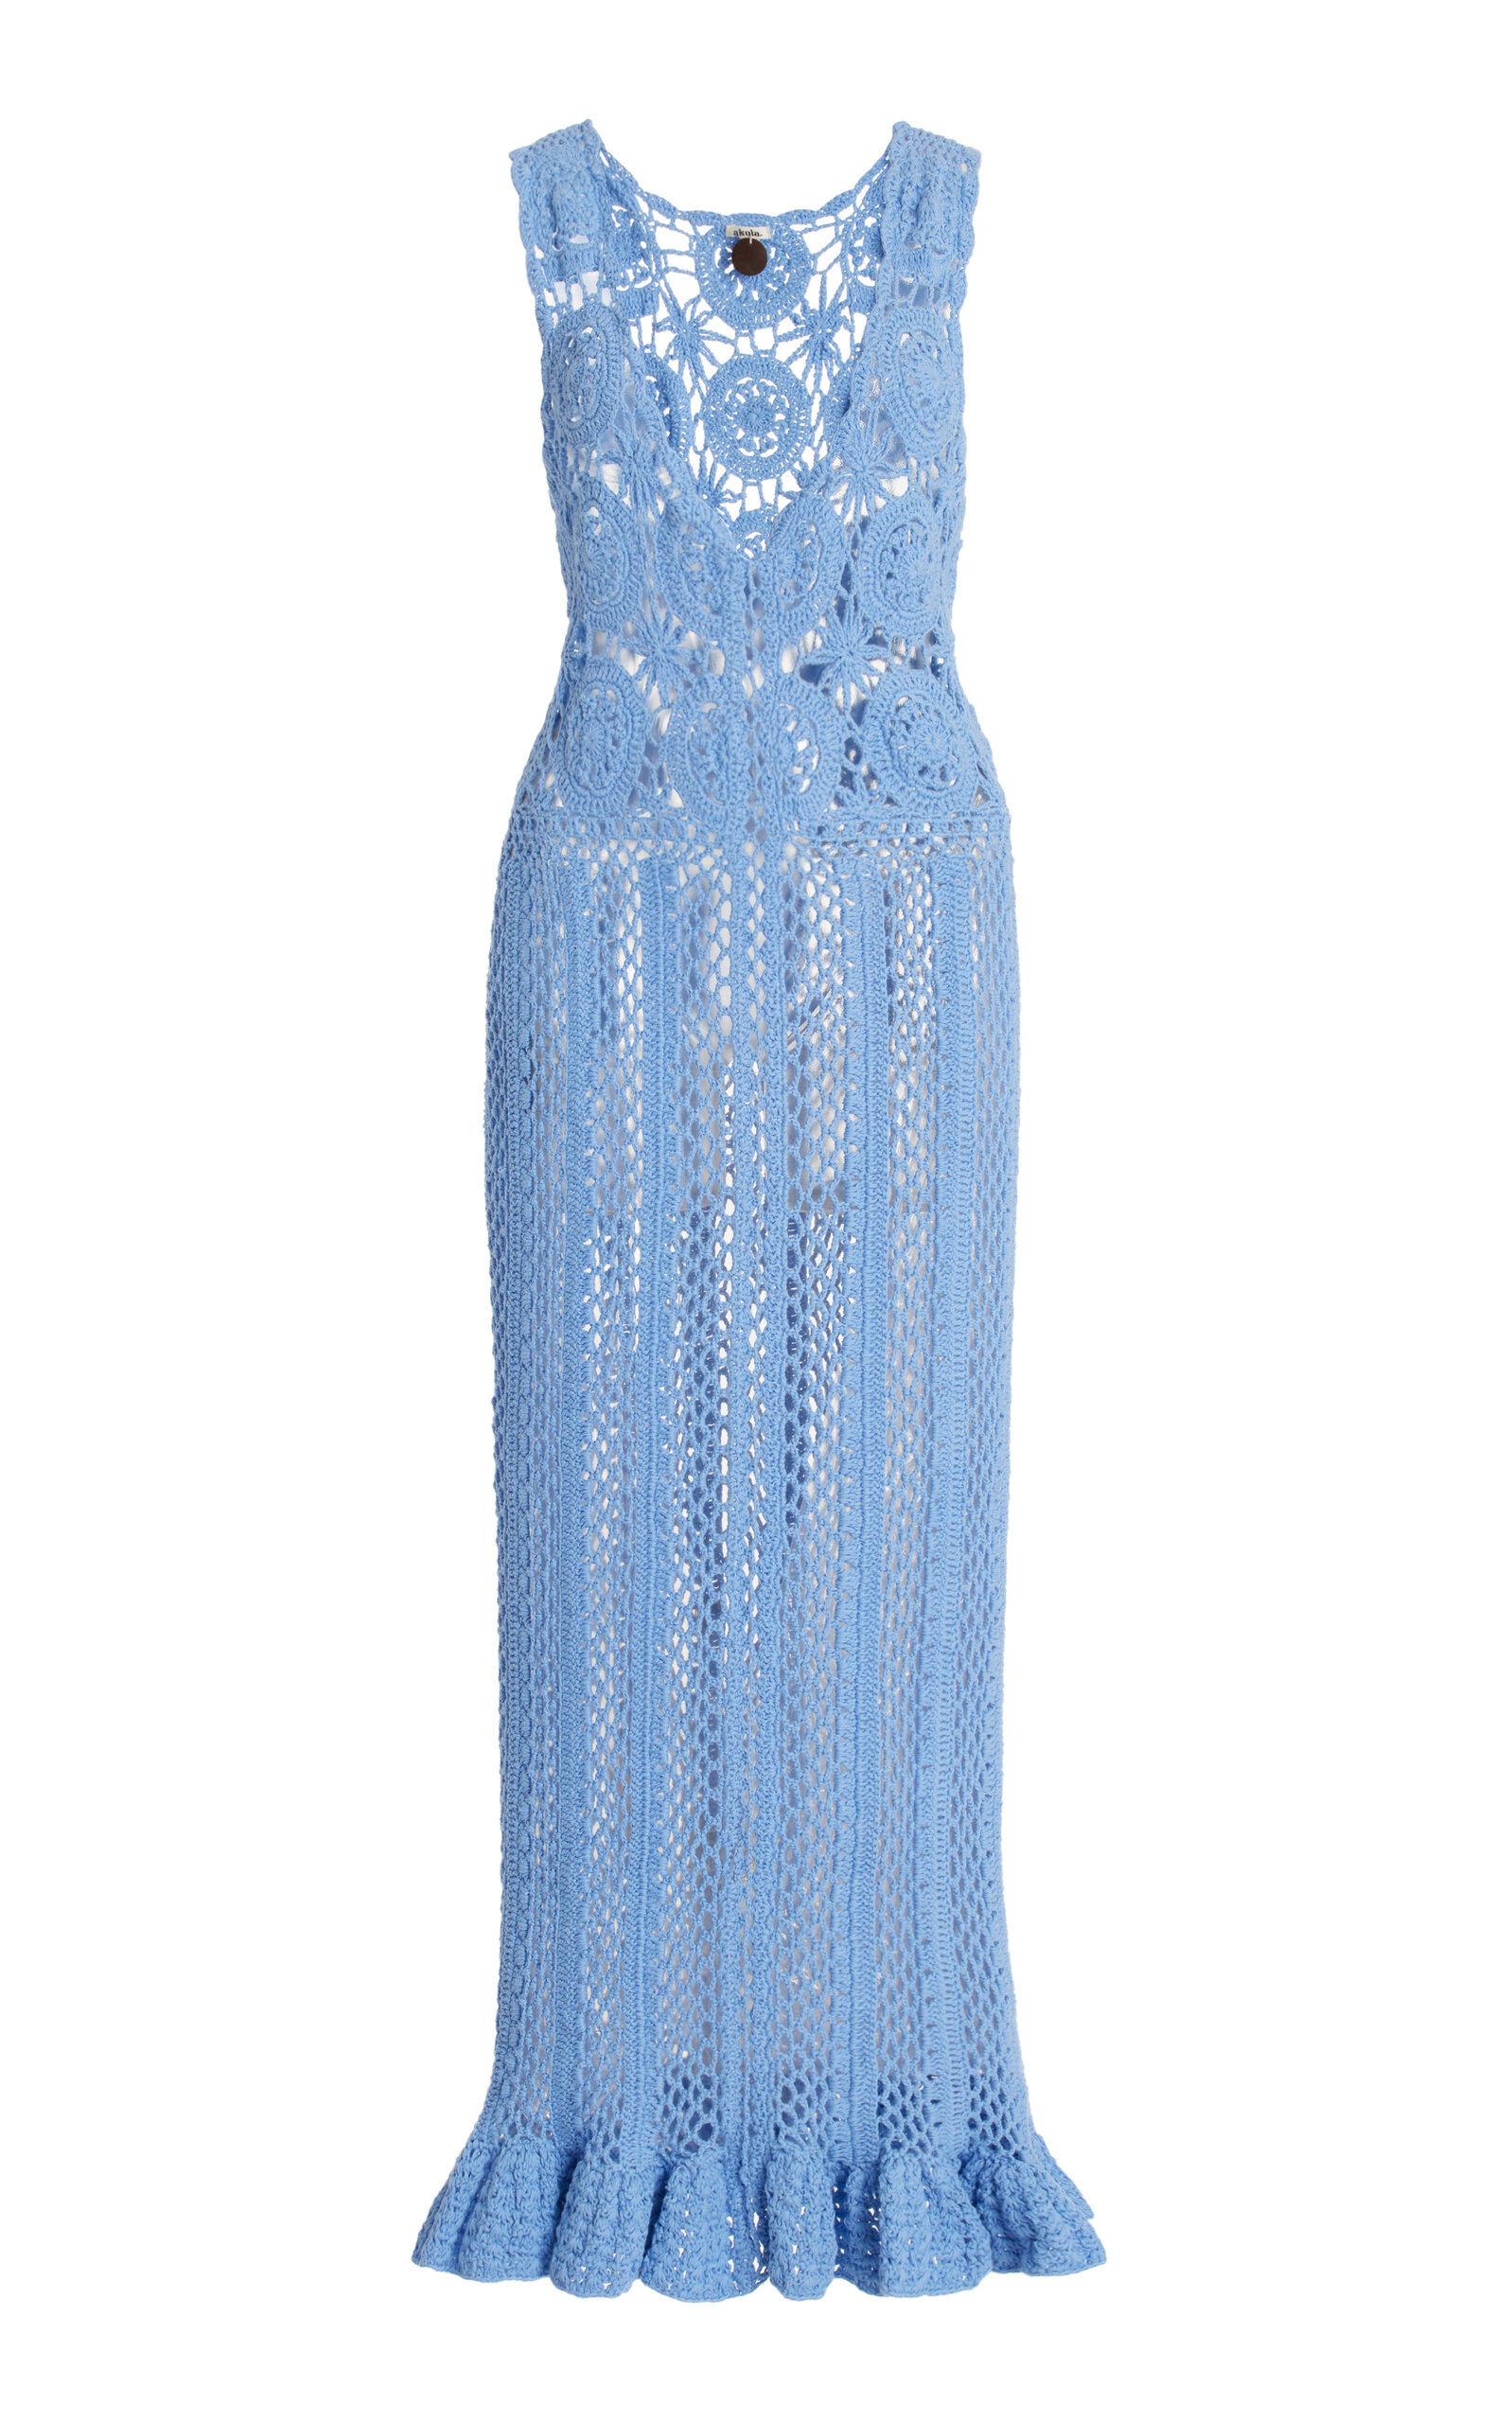 Azul Crocheted Cotton Maxi Dress